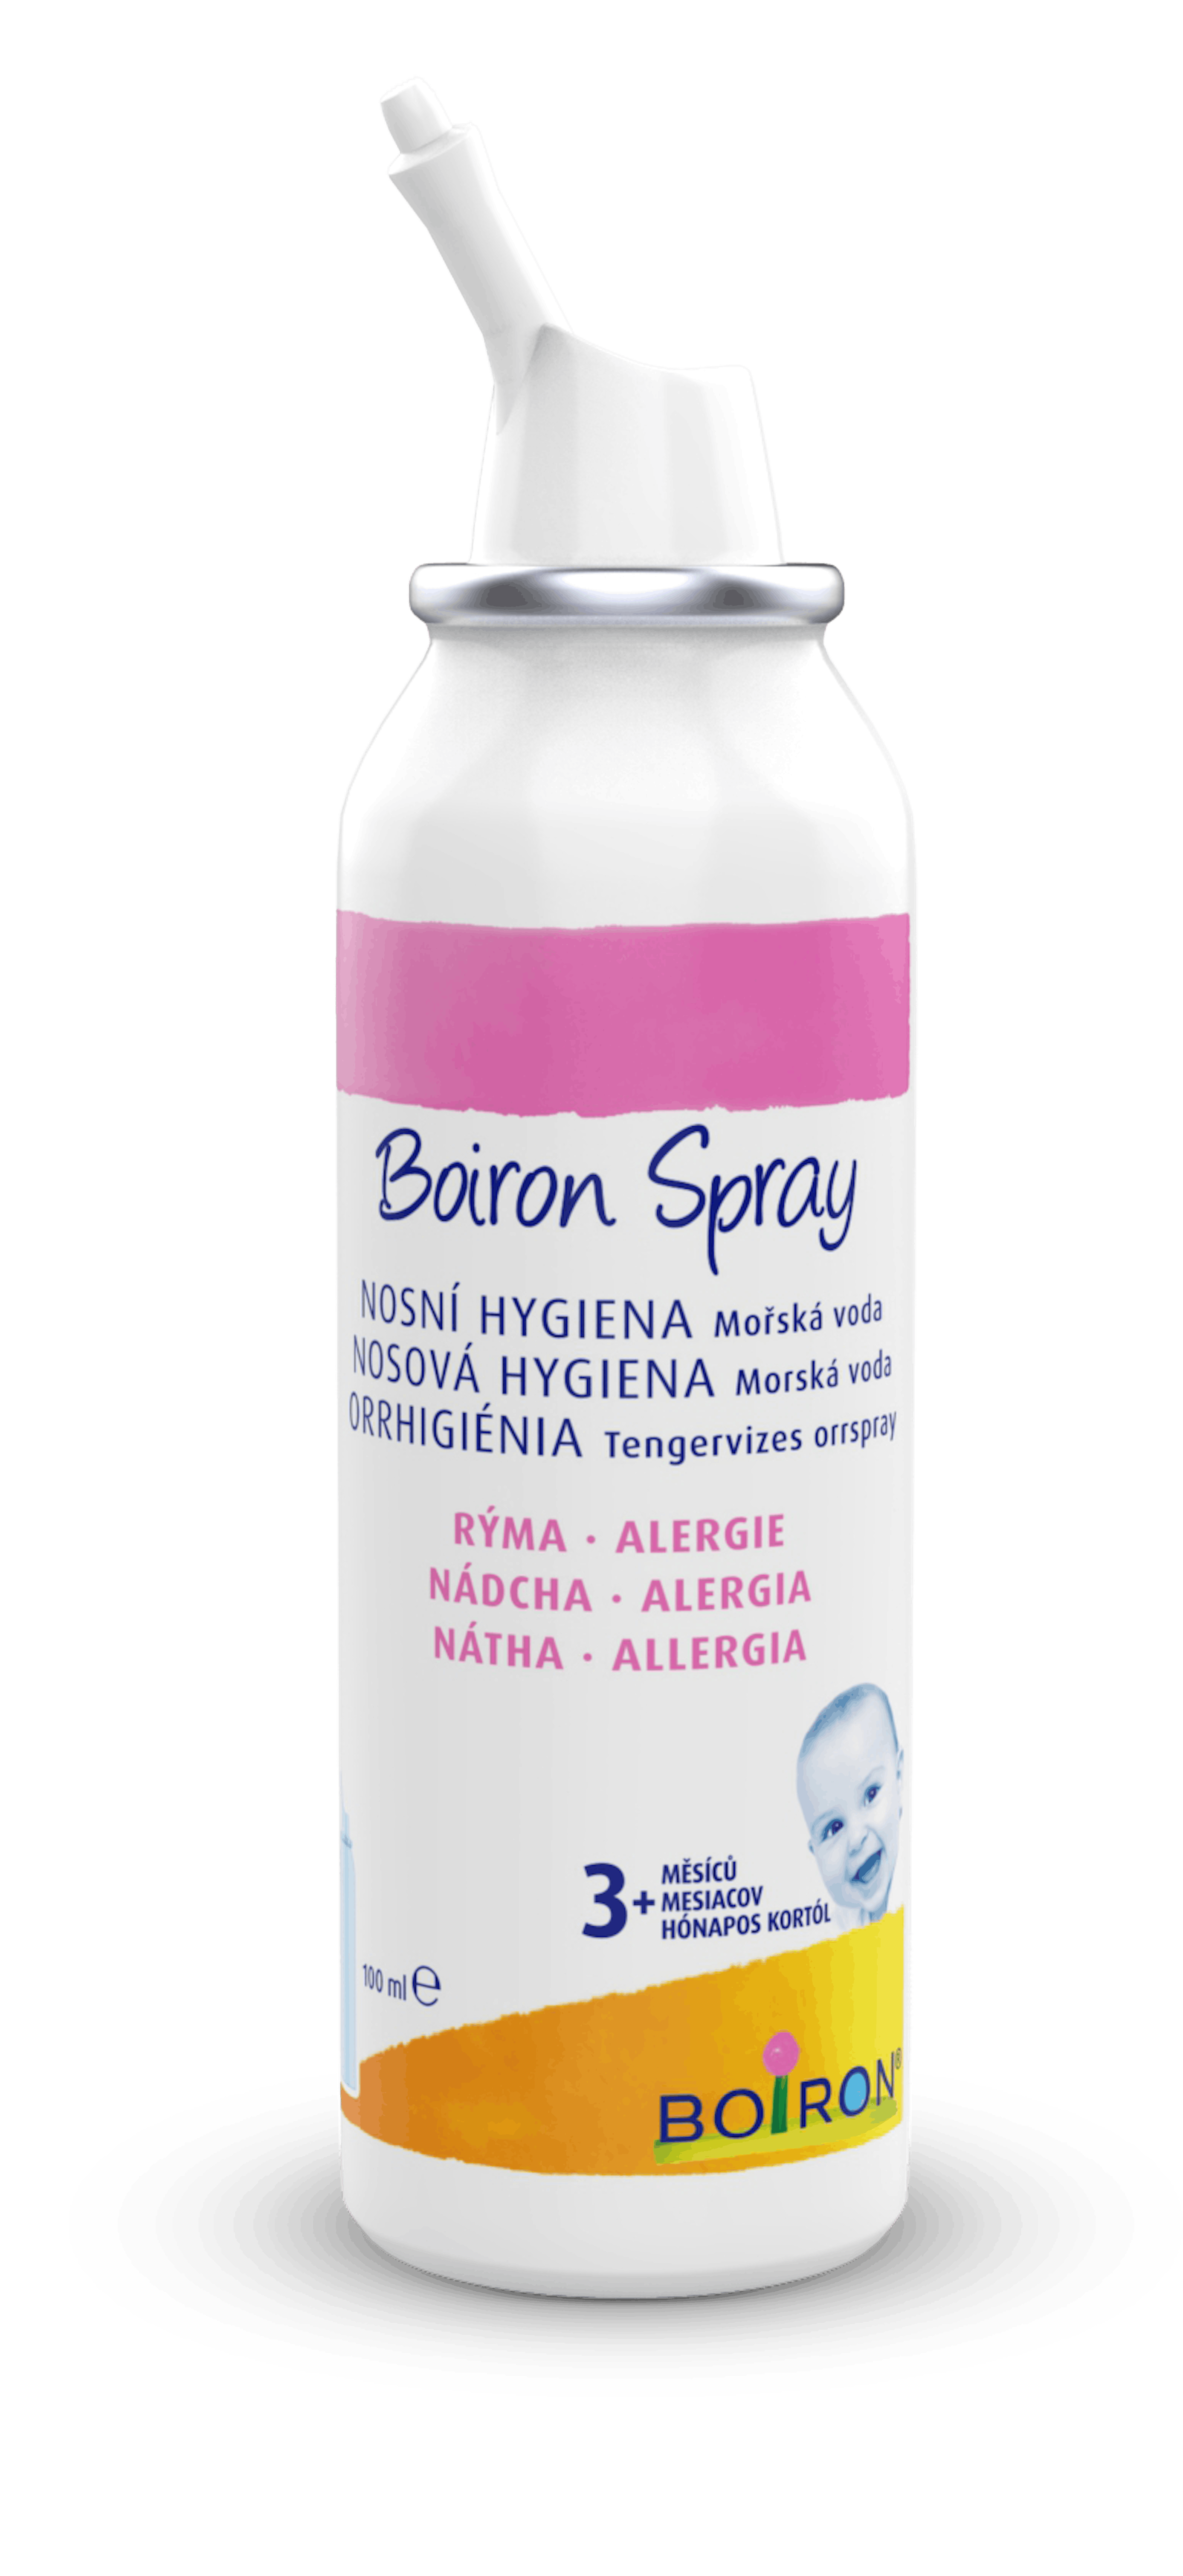 Boiron spray